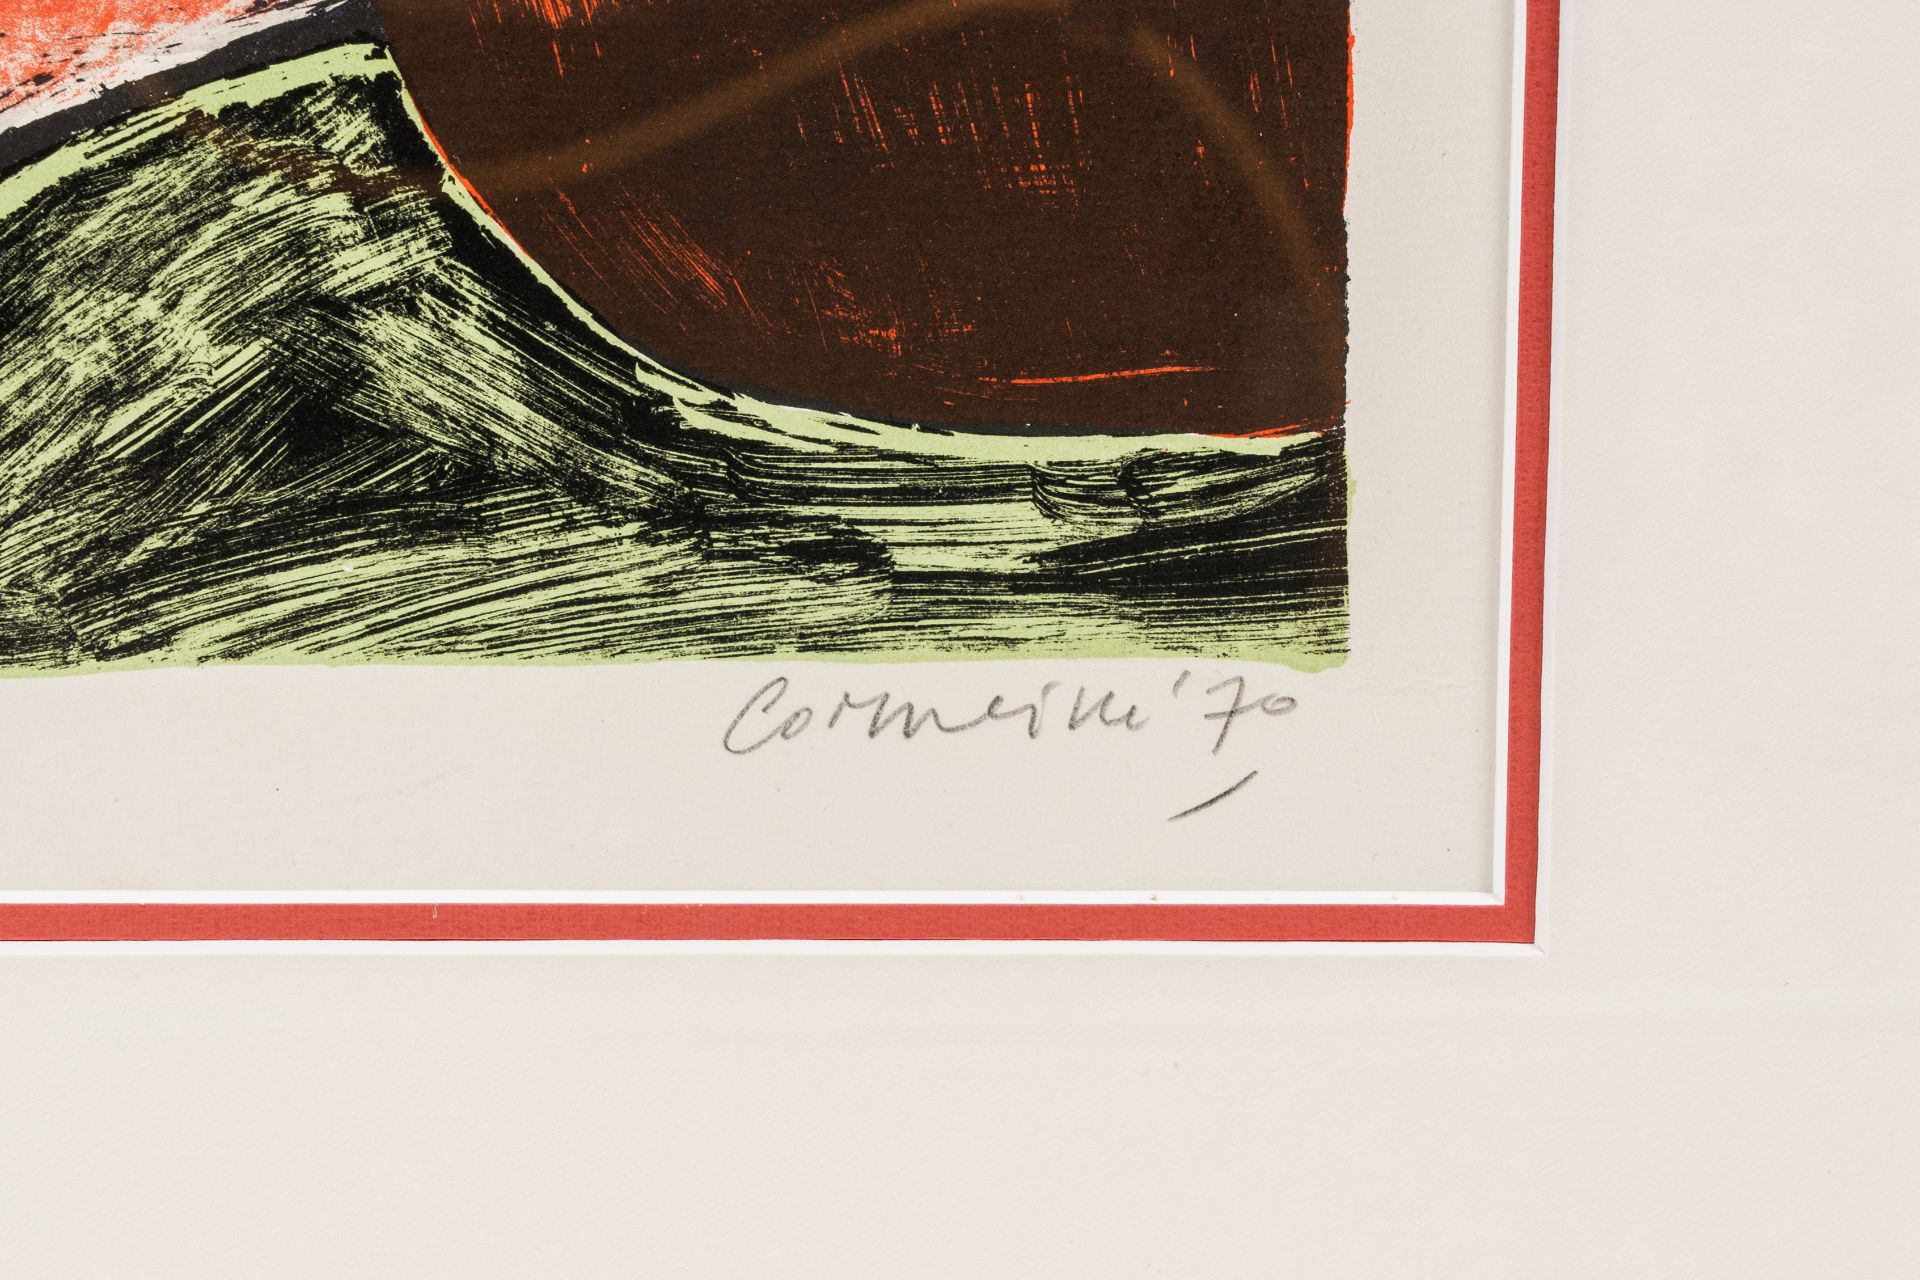 Guillaume Corneille van Beverloo (Corneille, 1922-2010): 'Le passage de l'oiseau', lithograph in col - Image 5 of 5